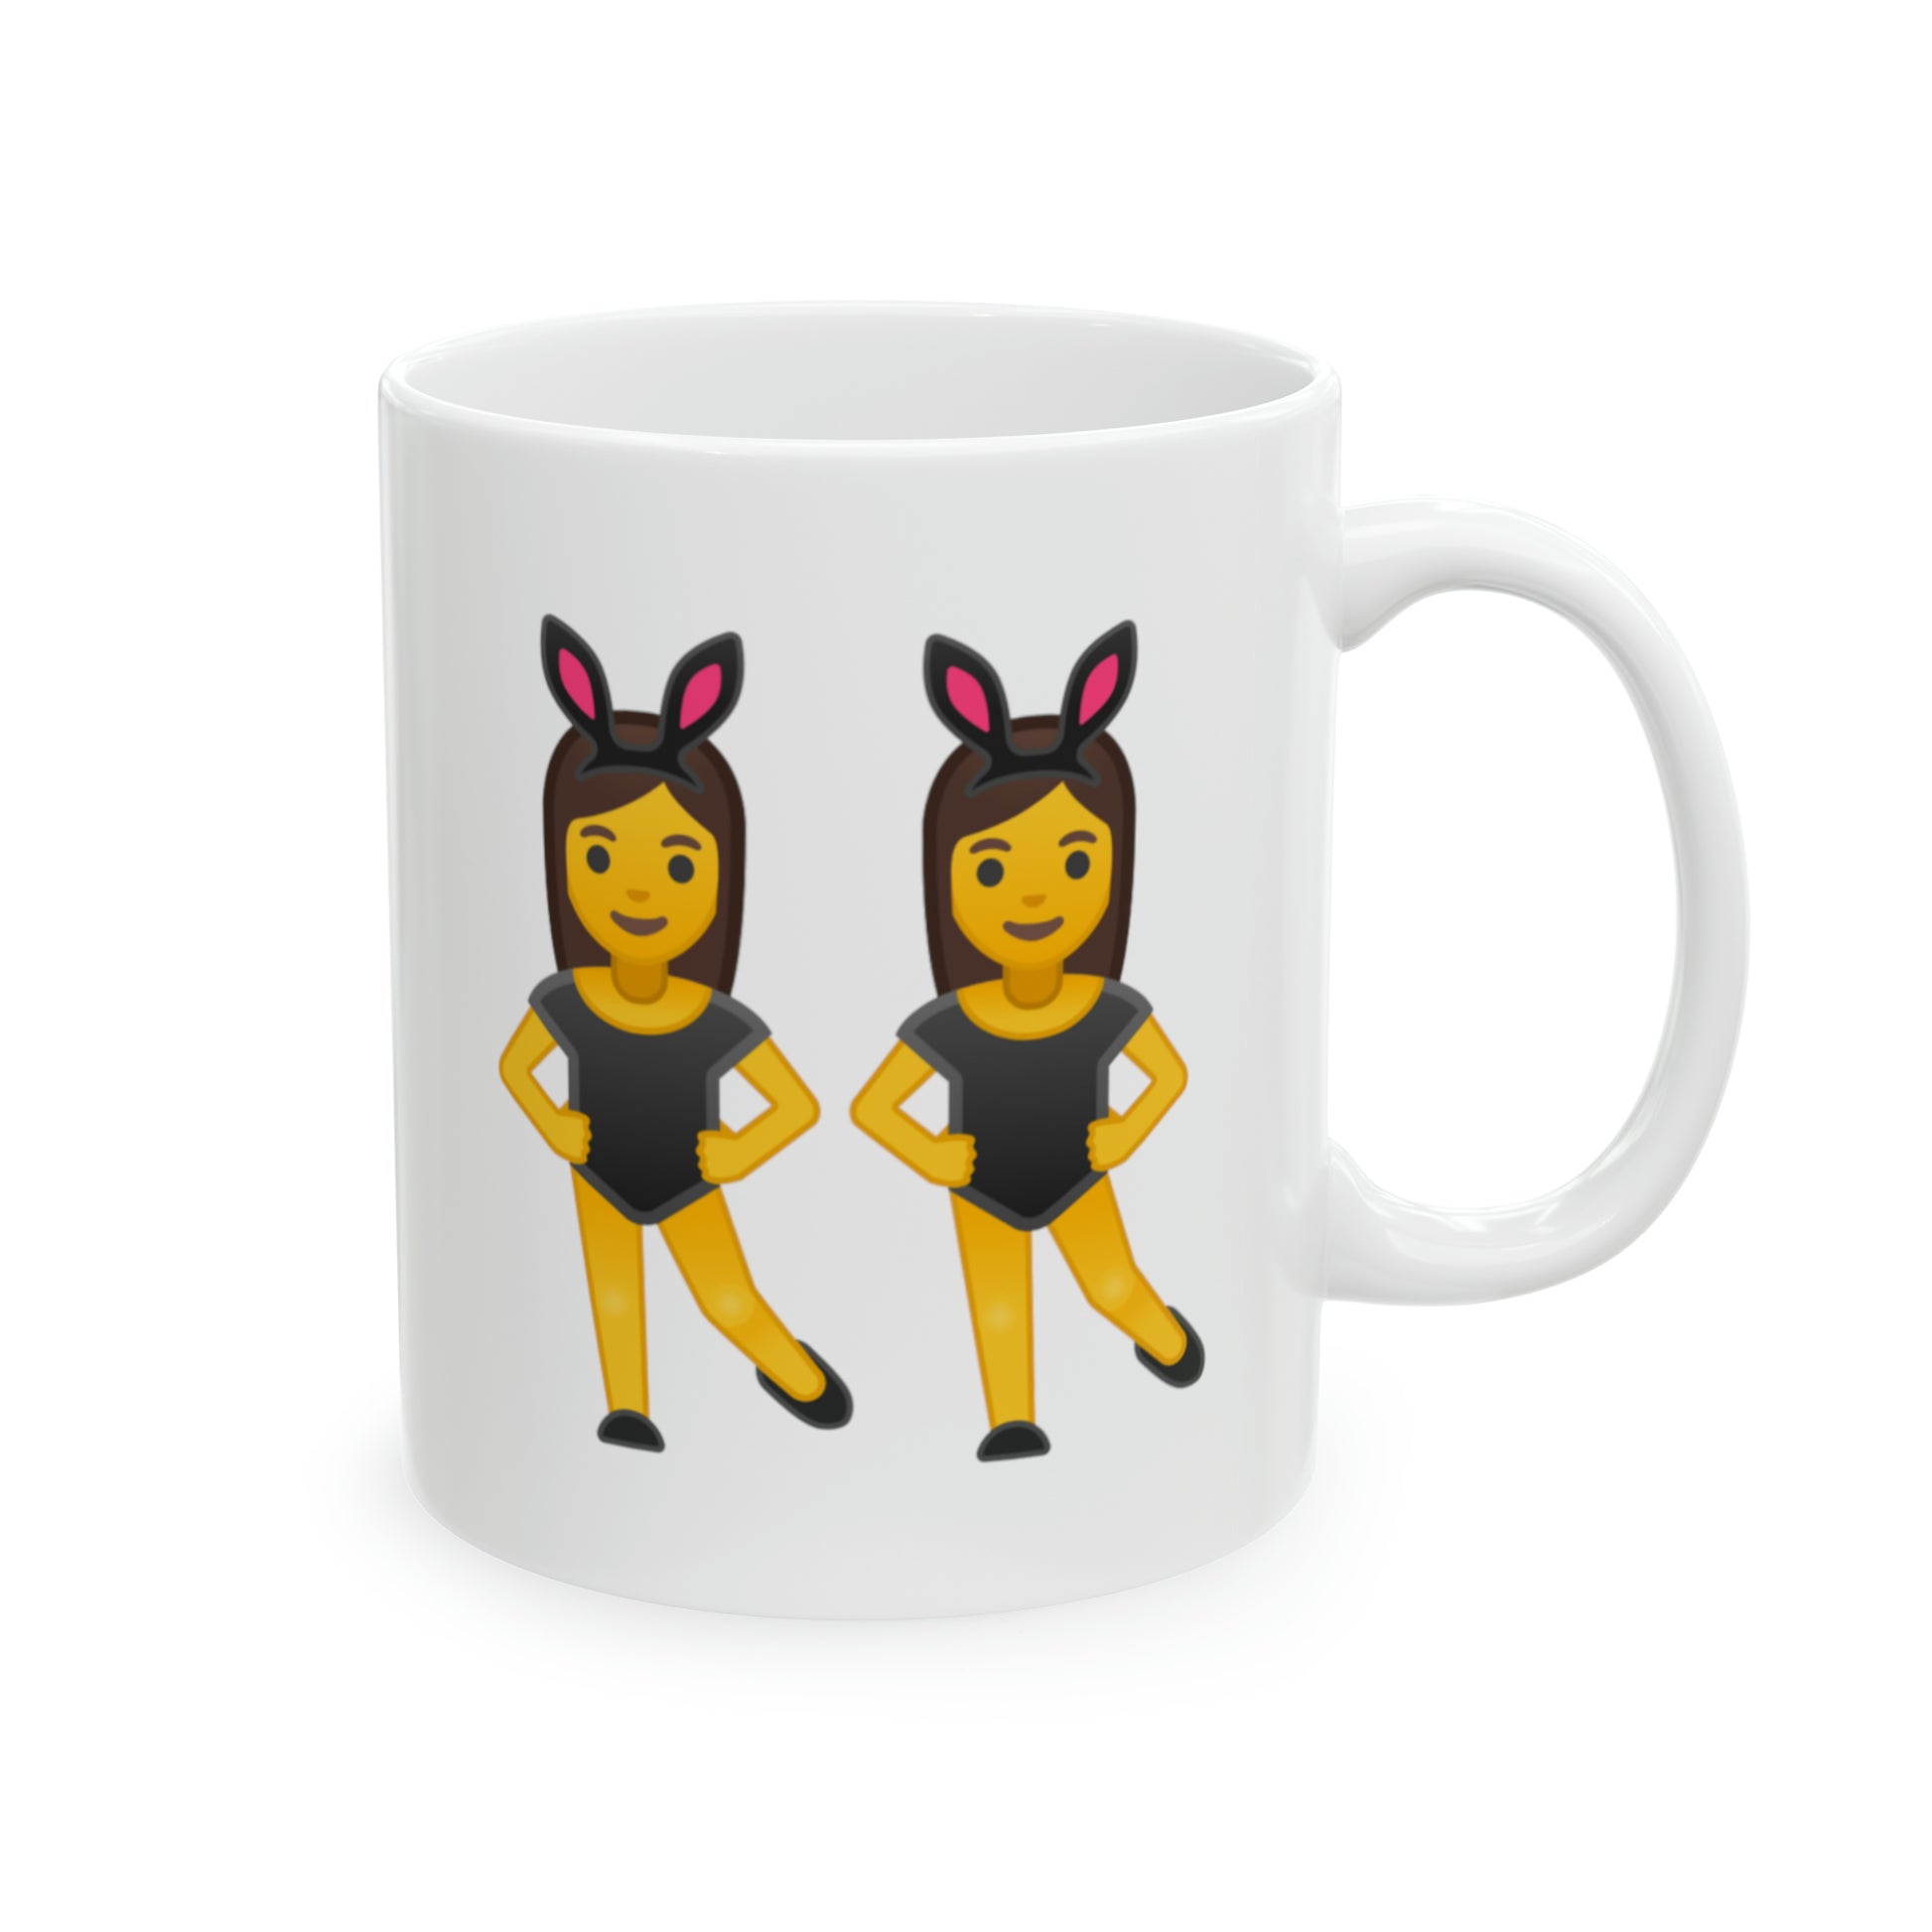 Twins Emoji Coffee Mug - Double Sided White Ceramic 11oz by TheGlassyLass,com